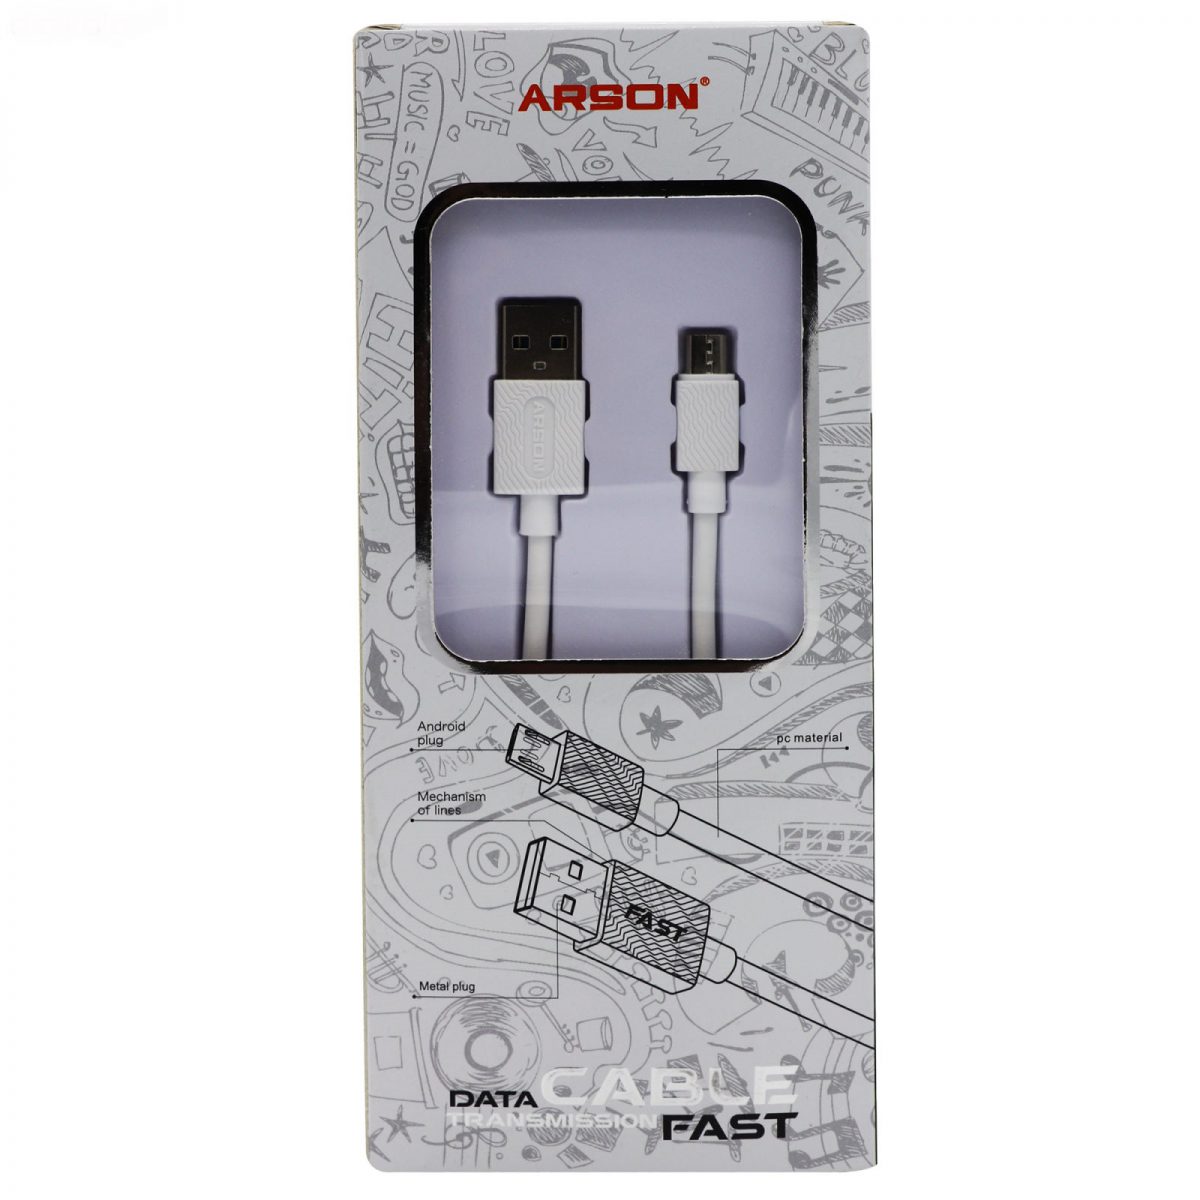 کابل تبدیل USB به Micro-USB آرسون مدل AN-X6